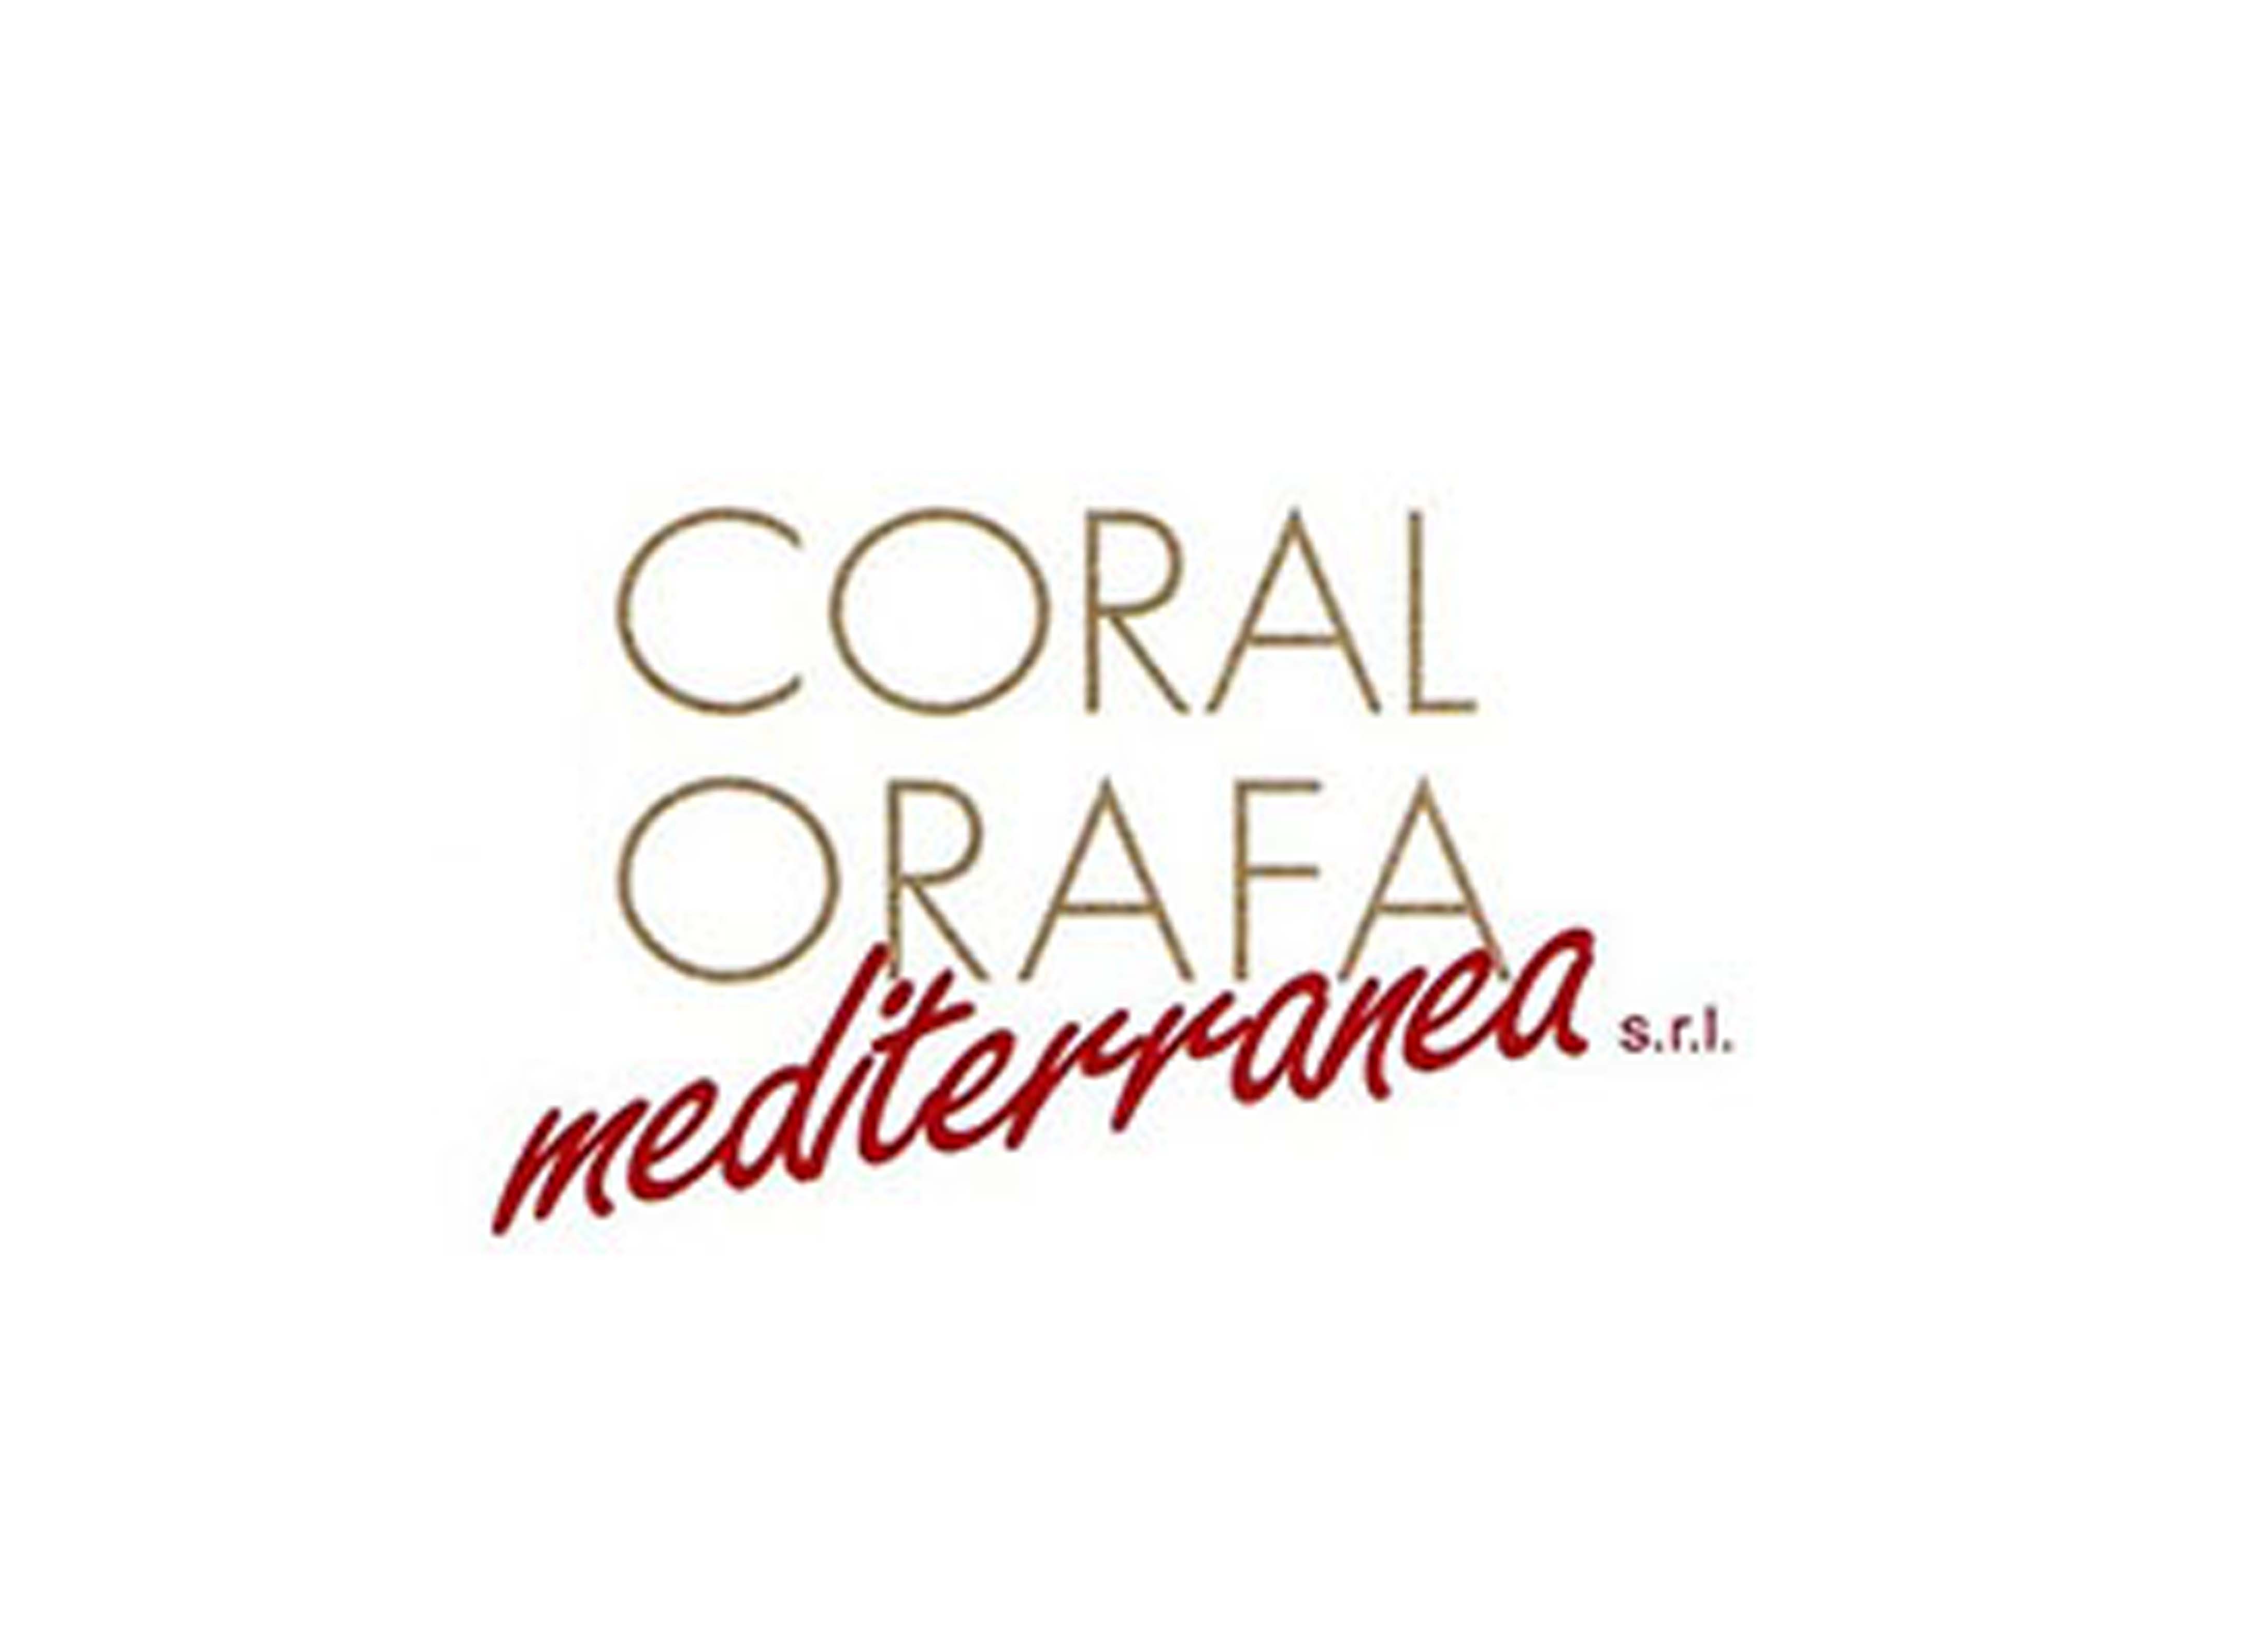 Coral Orafa S.a.s.